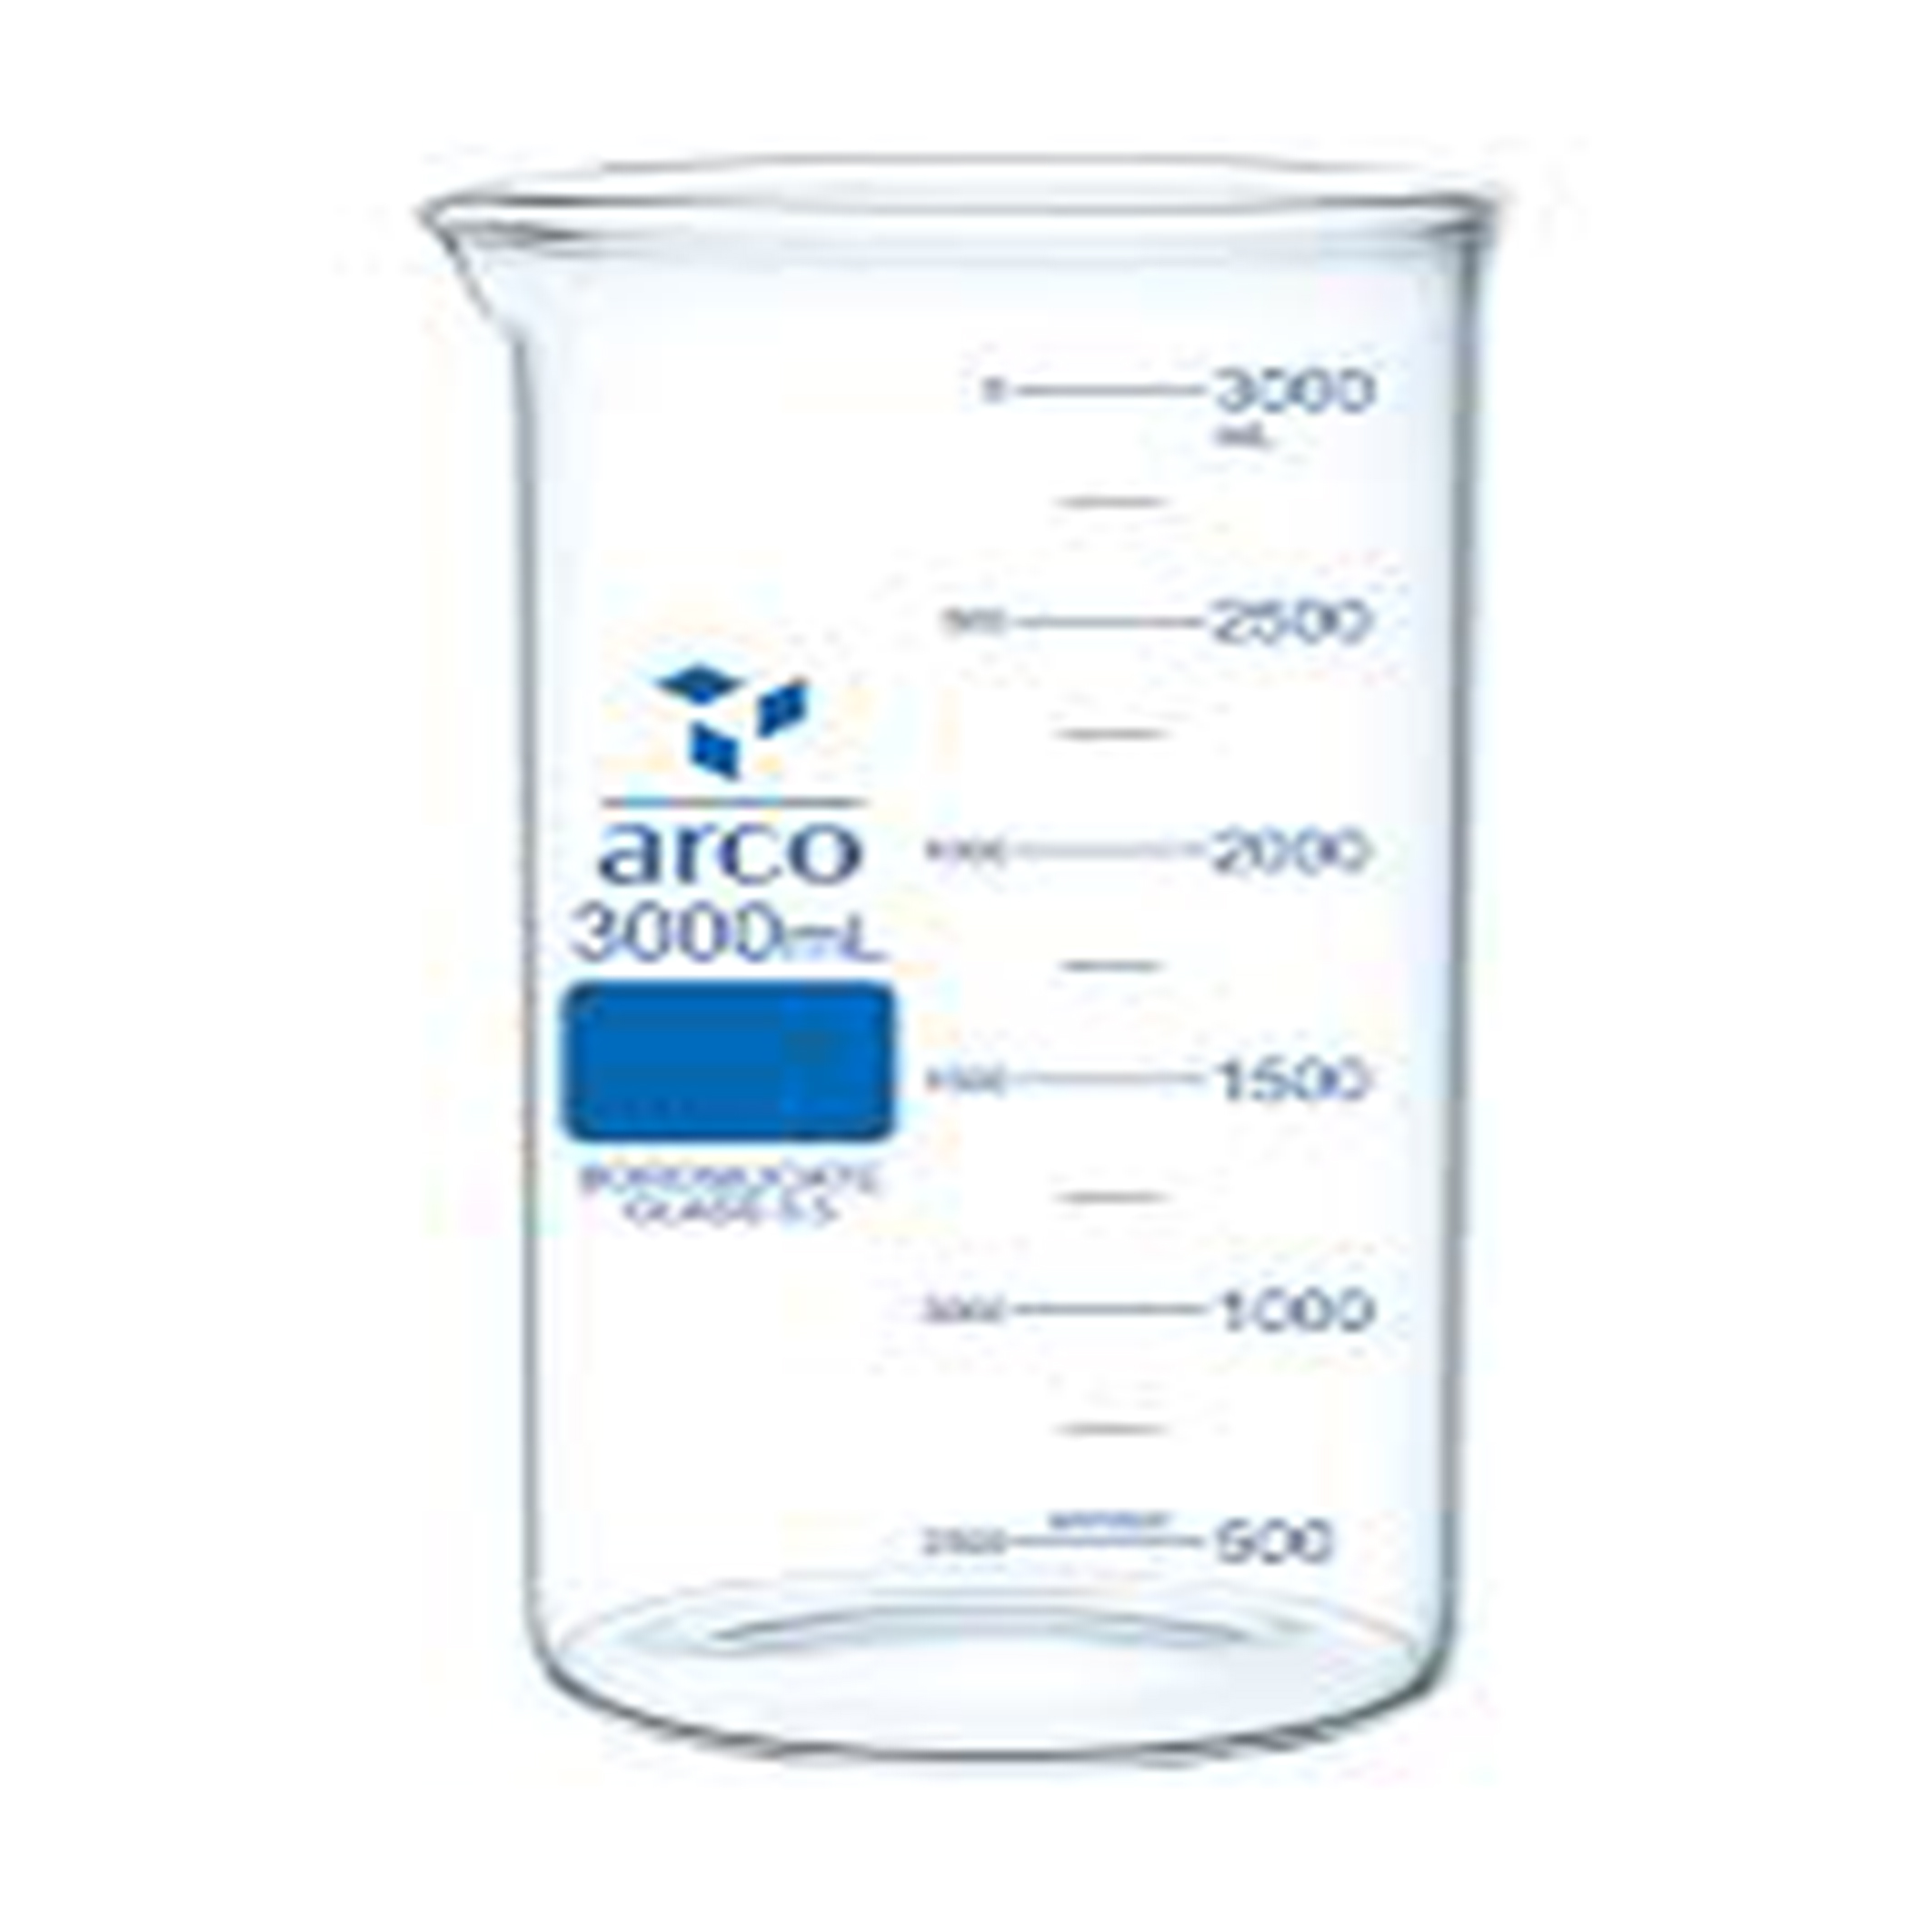 بشر شیشه ای کوتاه با لبه ریزش ARCO 3000 میلی لیتری